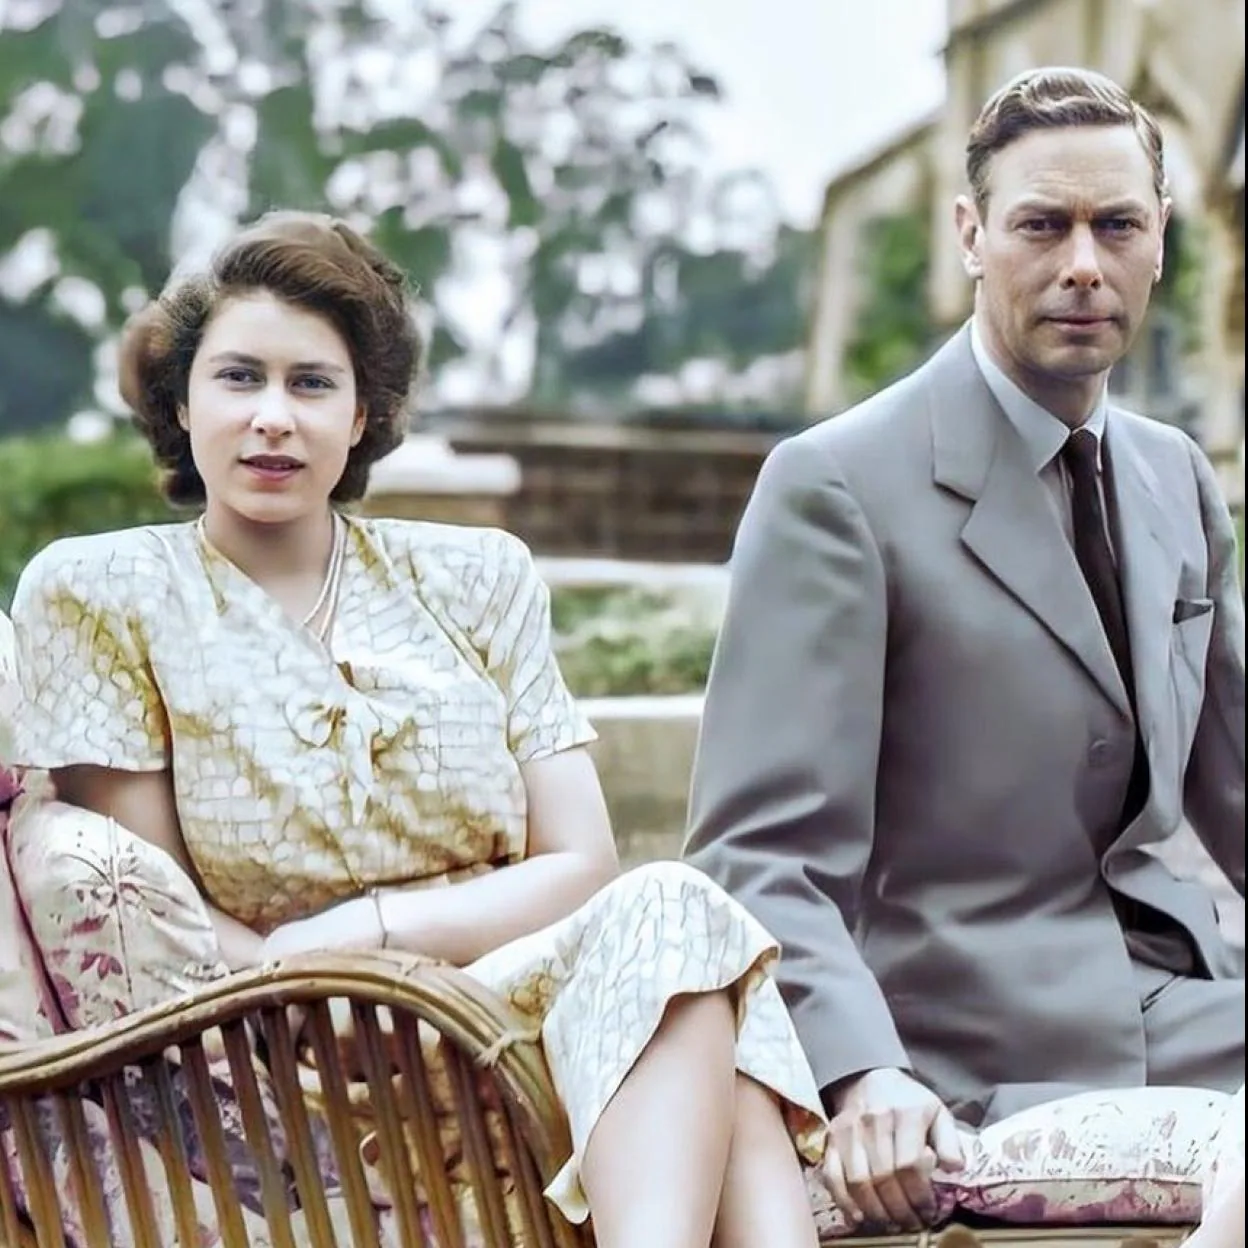 CUMPLEAÑOS REINA INGLATERRA Por qué el abuelo de la reina Isabel II cambió  el nombre (alemán) de la familia real británica a Windsor | Mujer Hoy